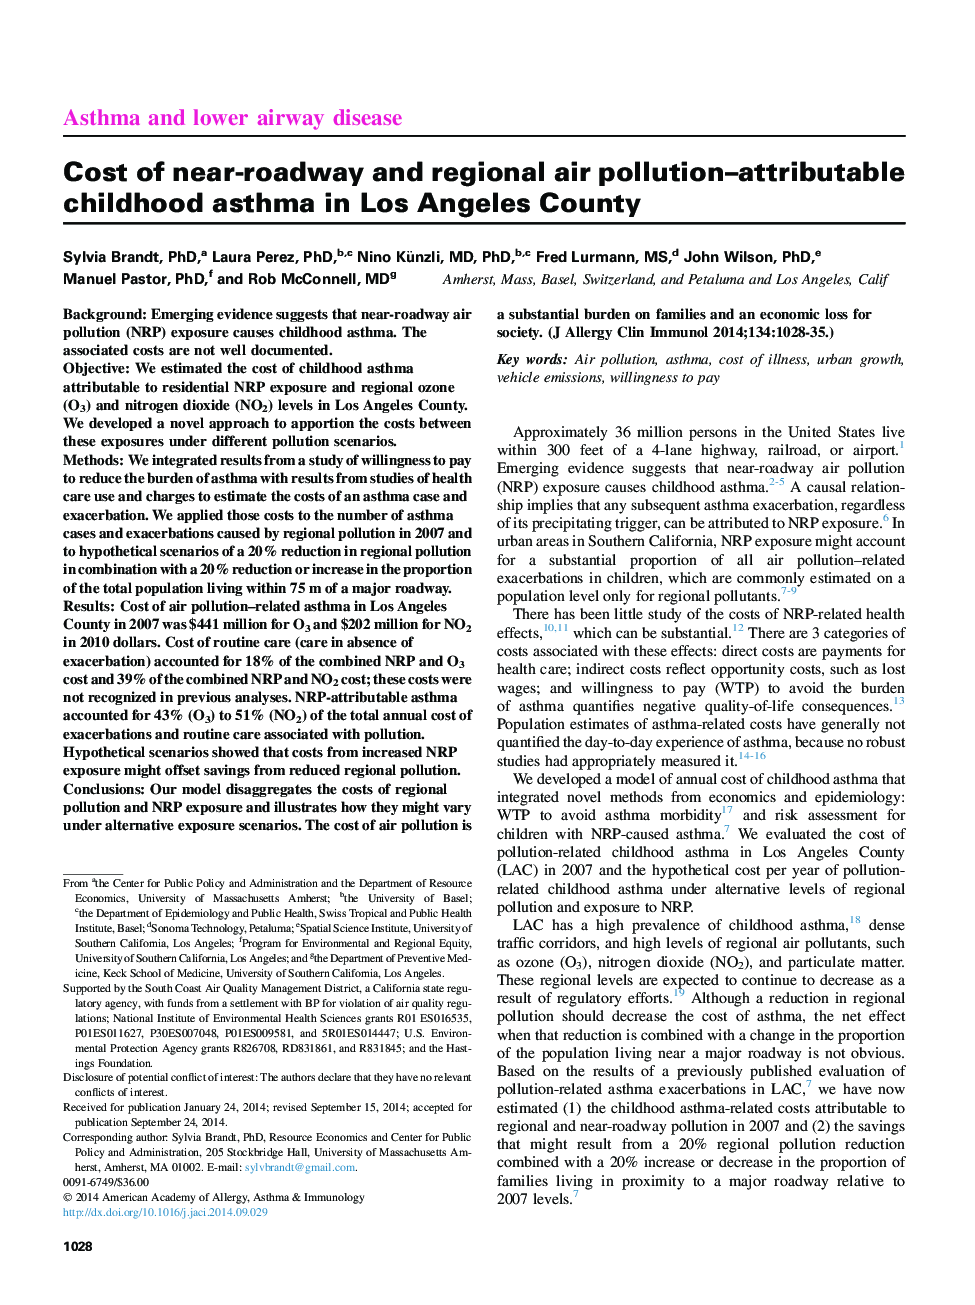 هزینه آسم دوران کودکی ناشی از آلودگی هوا در ناحیه نزدیک و جاده ای در منطقه لس آنجلس 